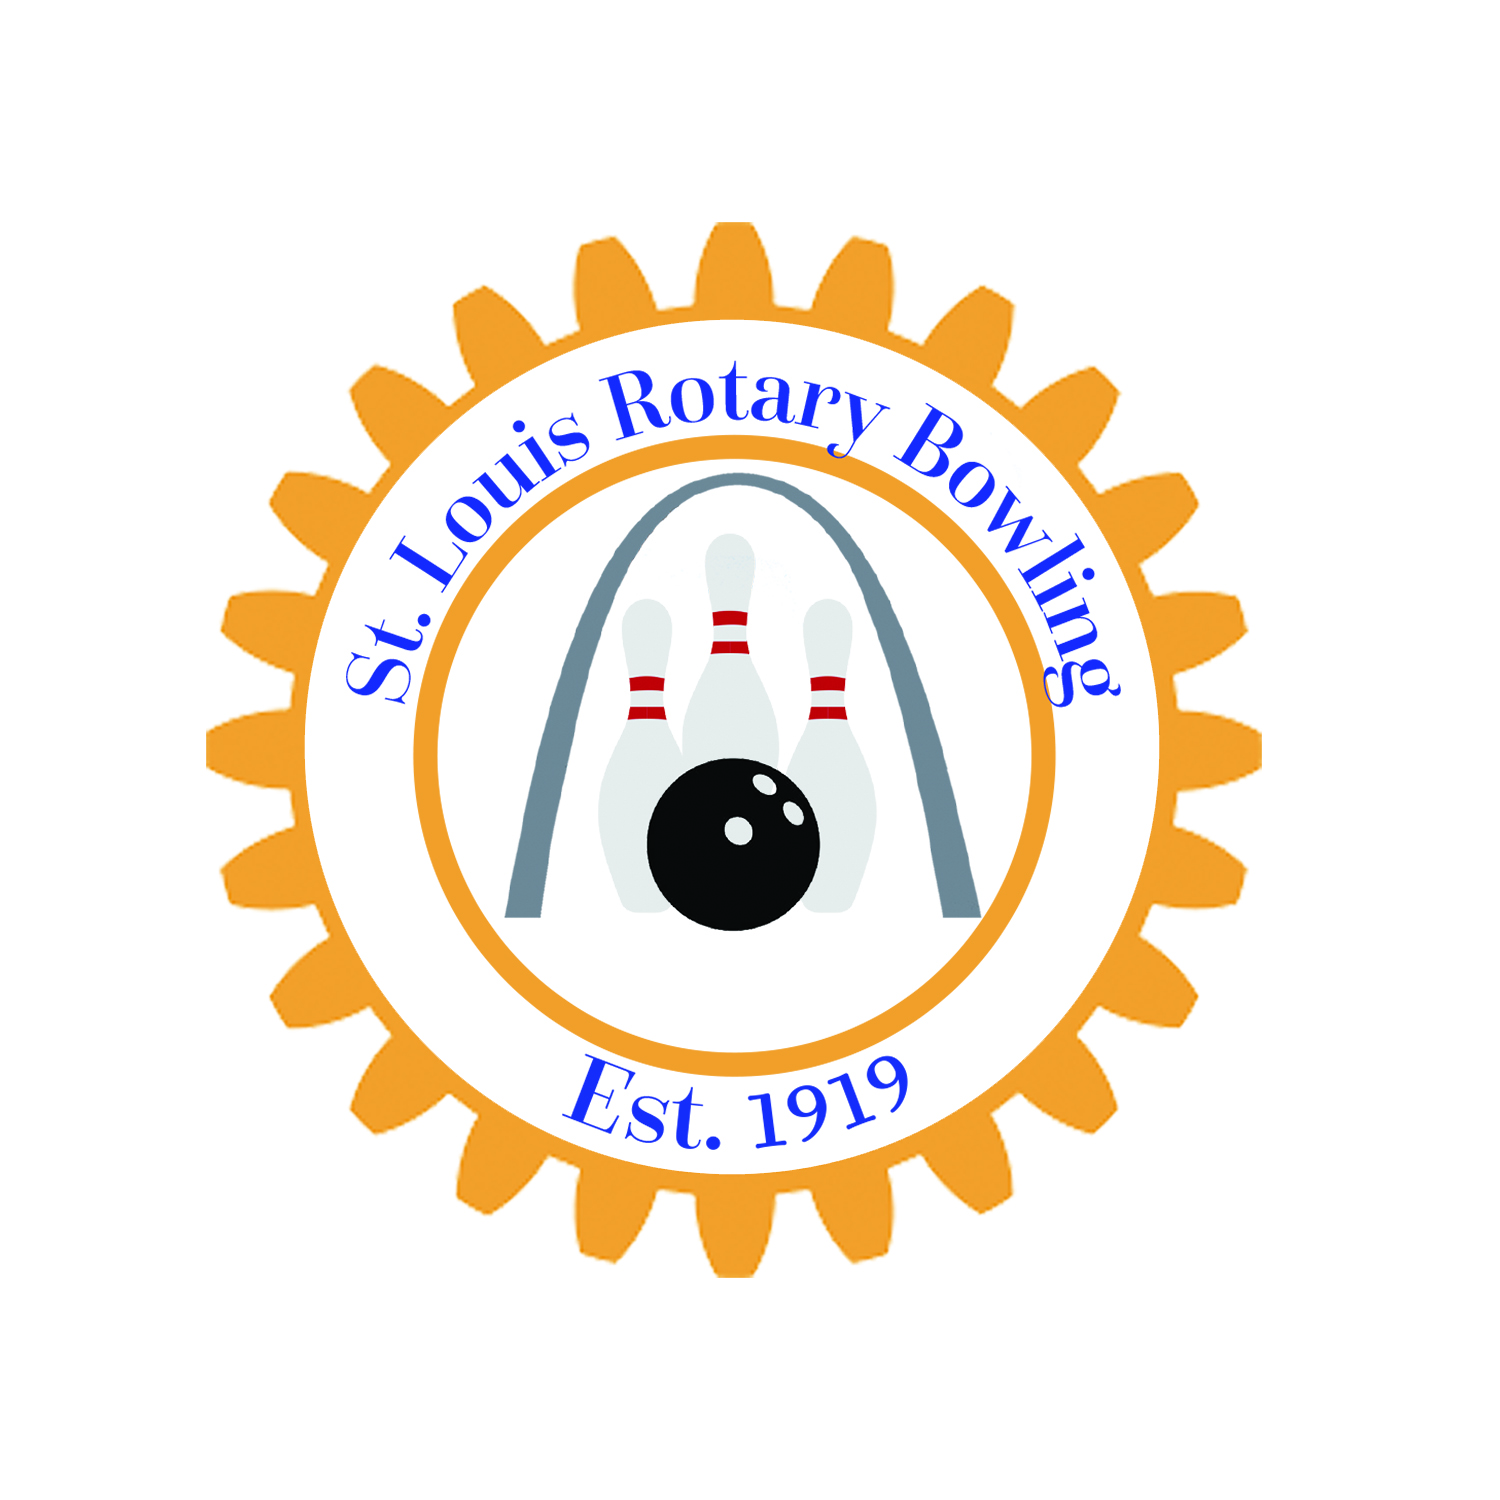 stl louis rotary bowling league 2020